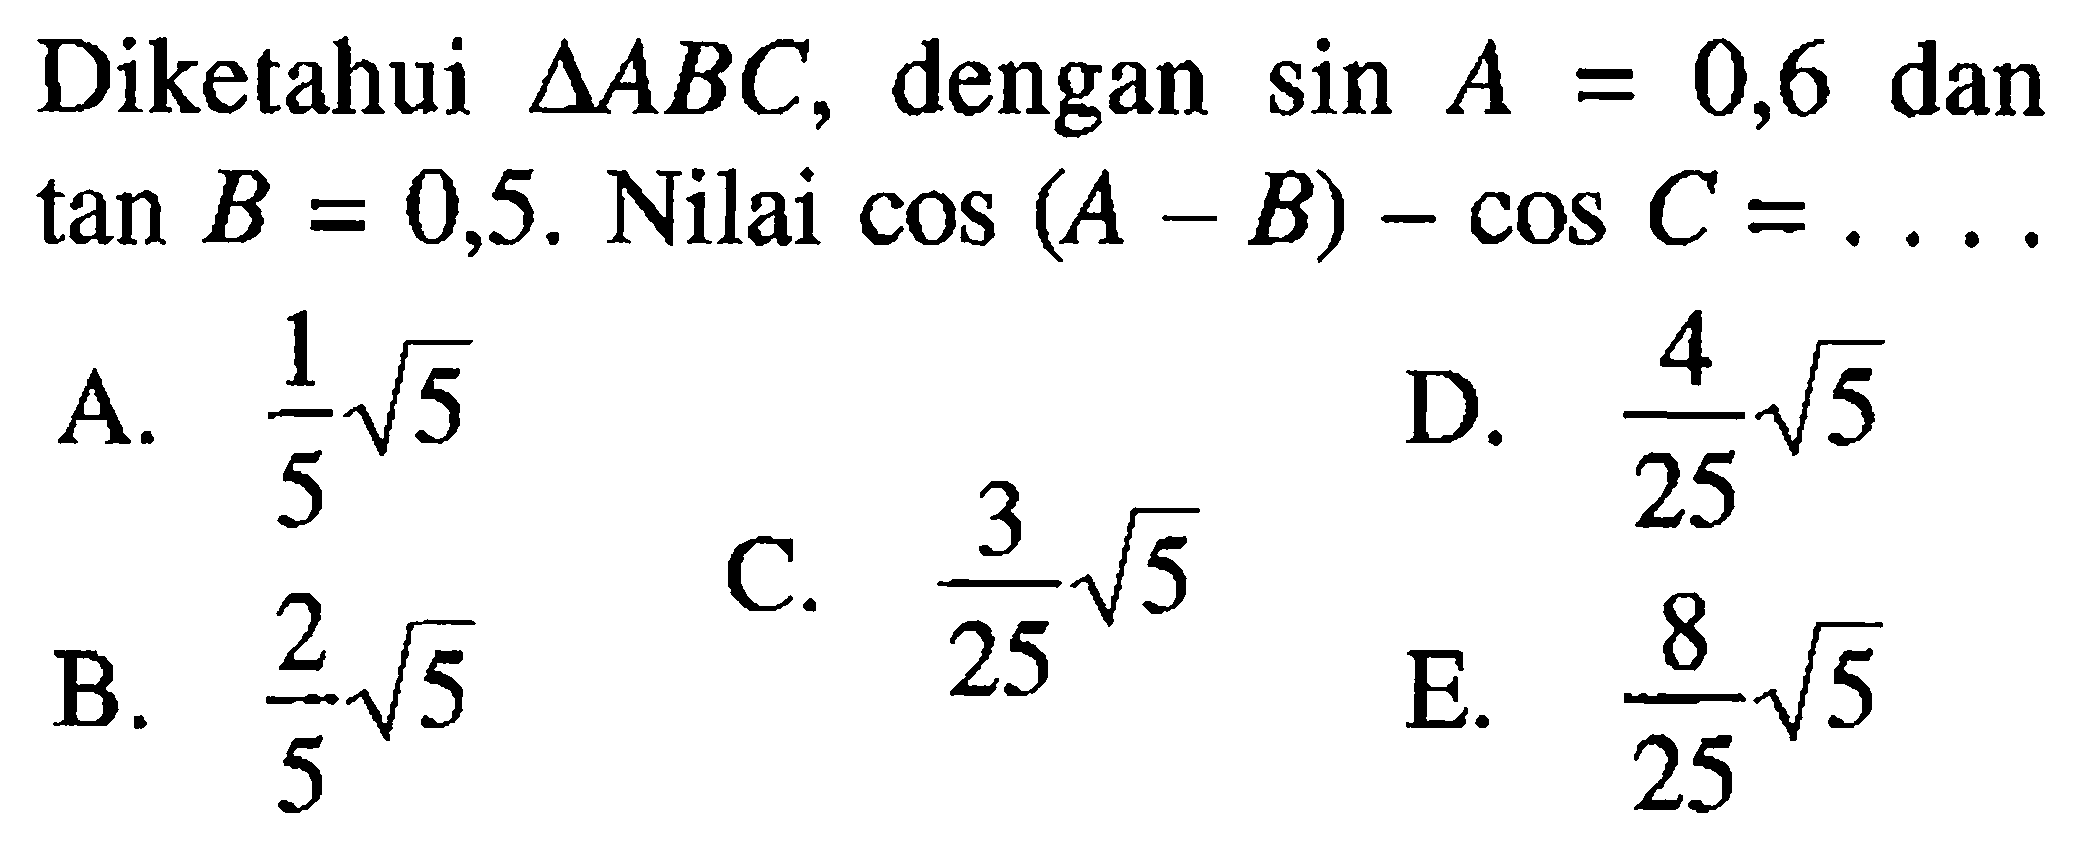 Diketahui segitiga ABC , dengan sin A=0,6 dan tan B=0,5. Nilai cos(A-B)-cos C=...